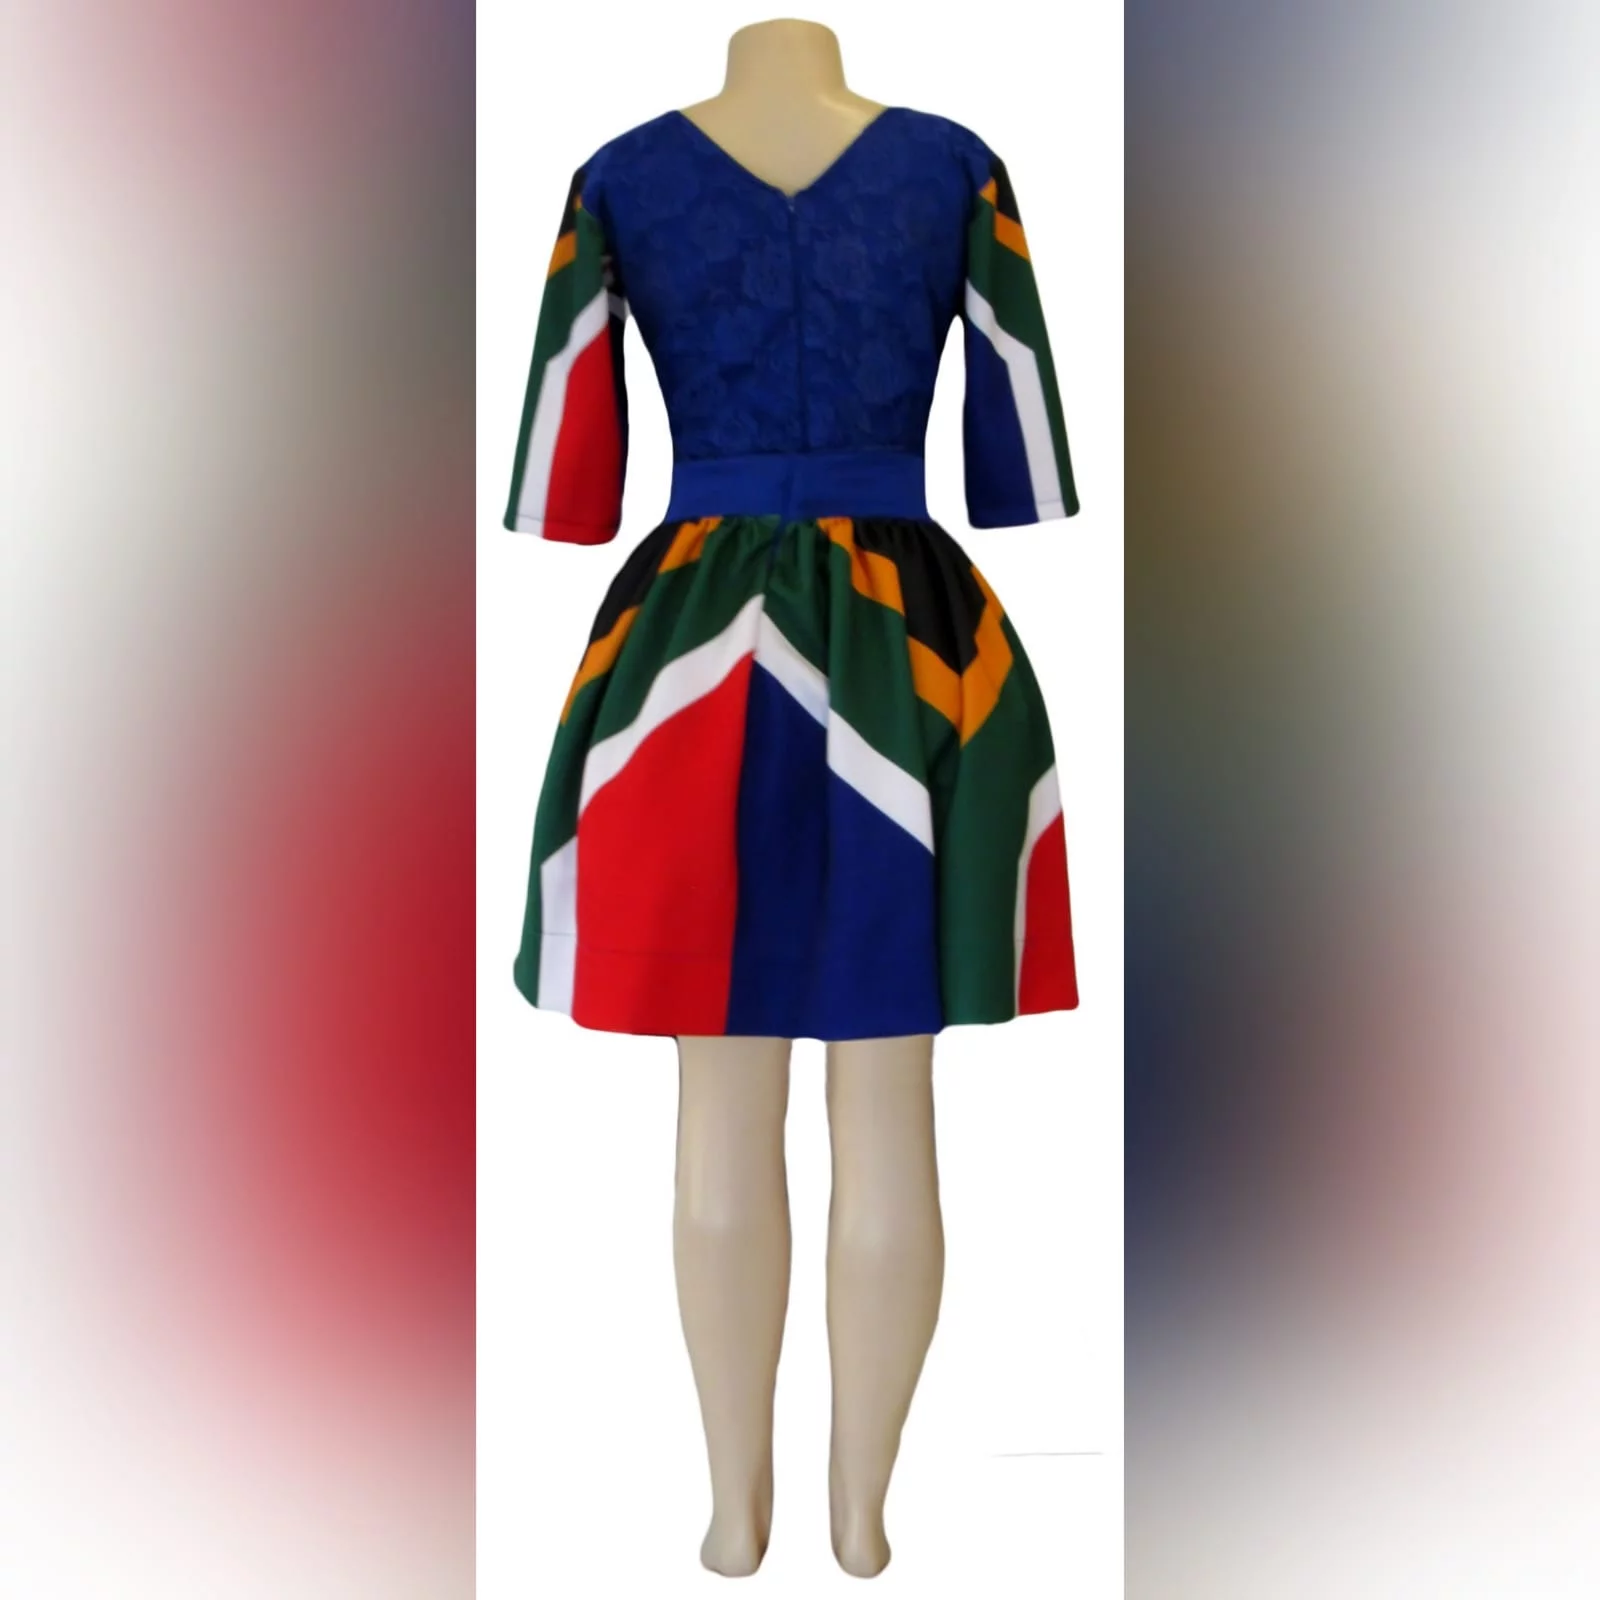 Vestido tradicional curto de bandeira com renda 6 vestido tradicional curto de bandeira de africa do sul azul roial. Com mangas de bandeira africa do sul e um corpete de renda. Vestido tradicional para a graduação.